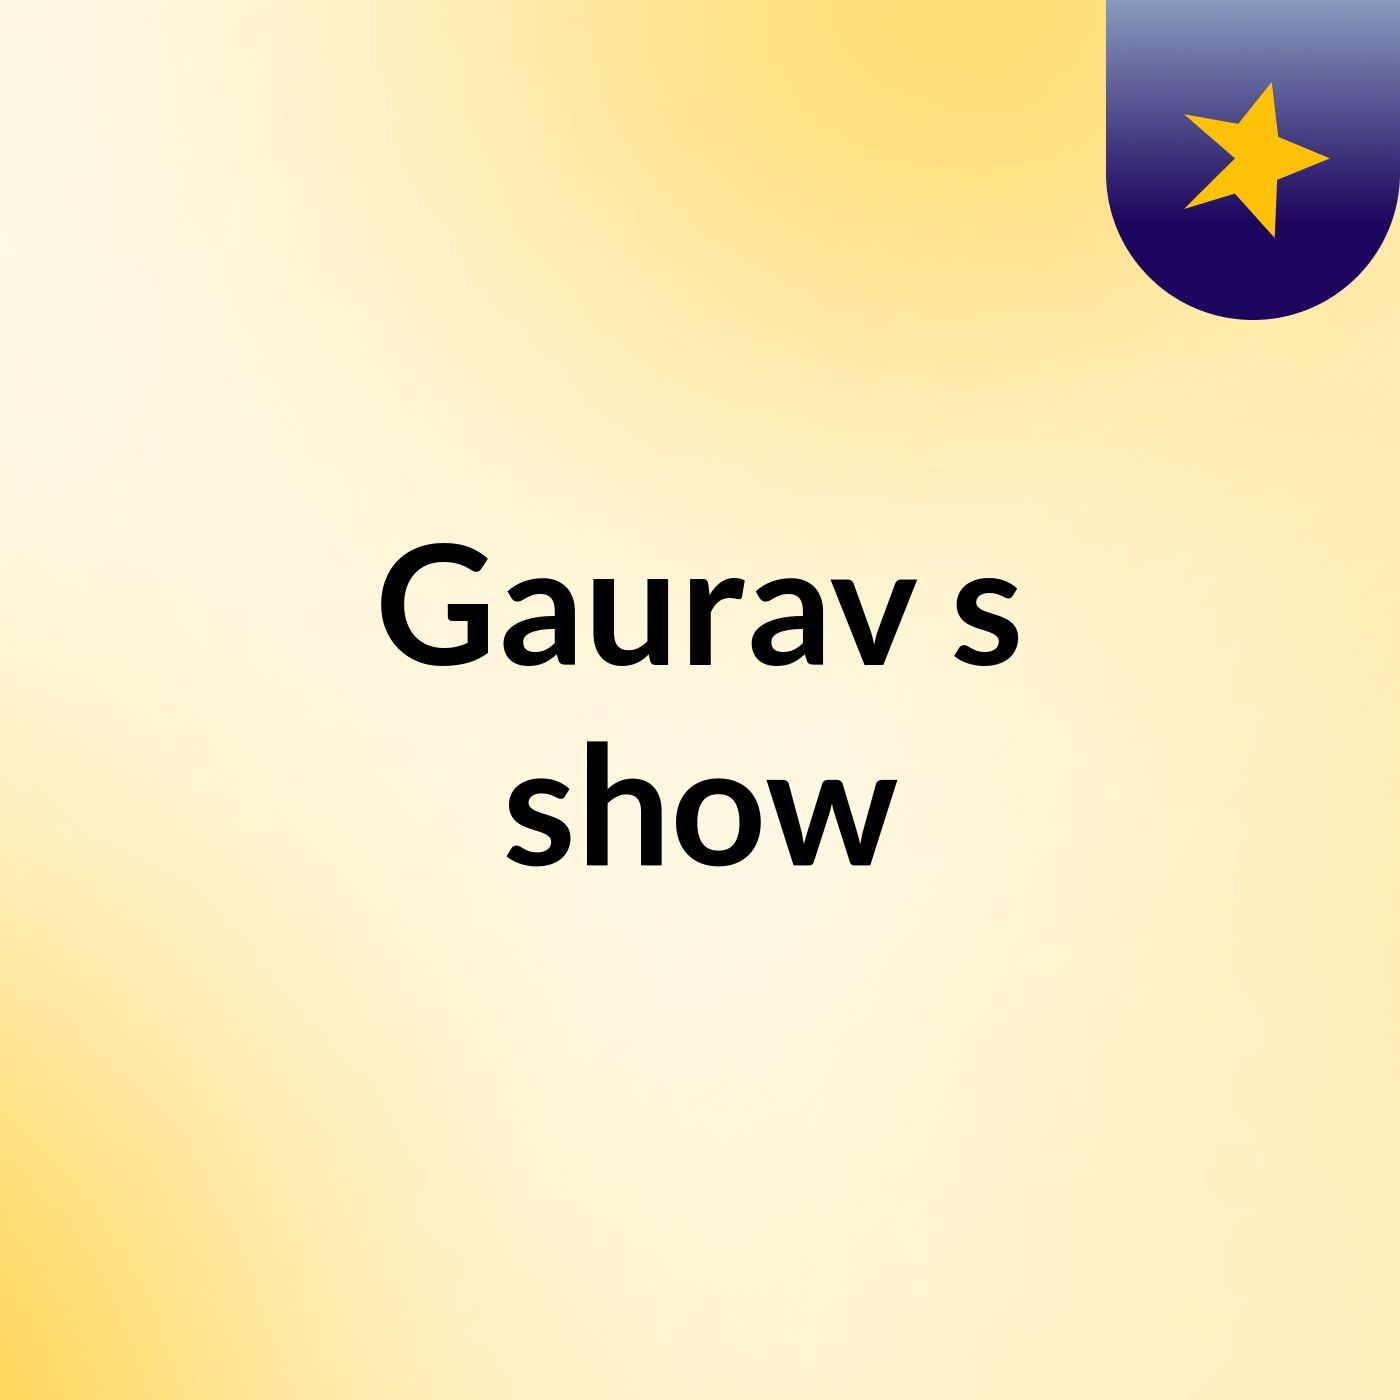 Gaurav's show